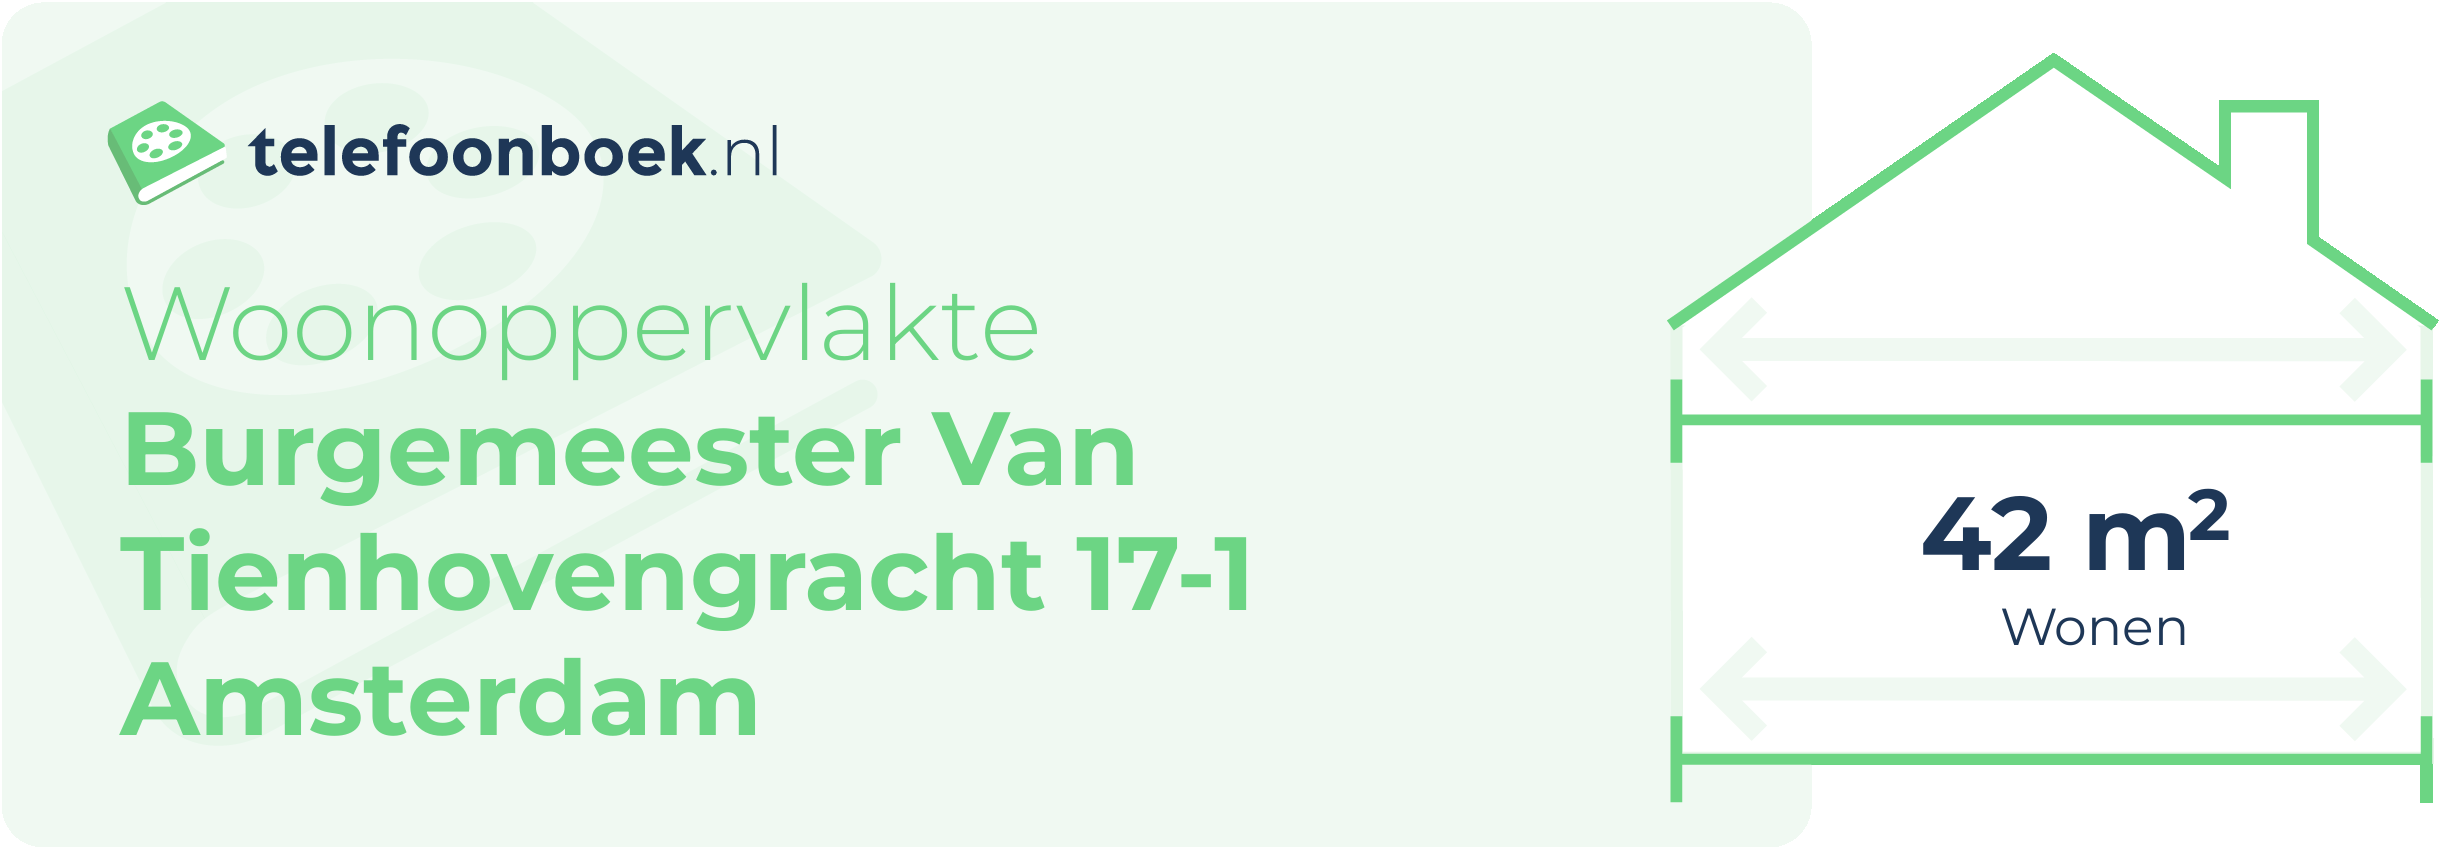 Woonoppervlakte Burgemeester Van Tienhovengracht 17-1 Amsterdam